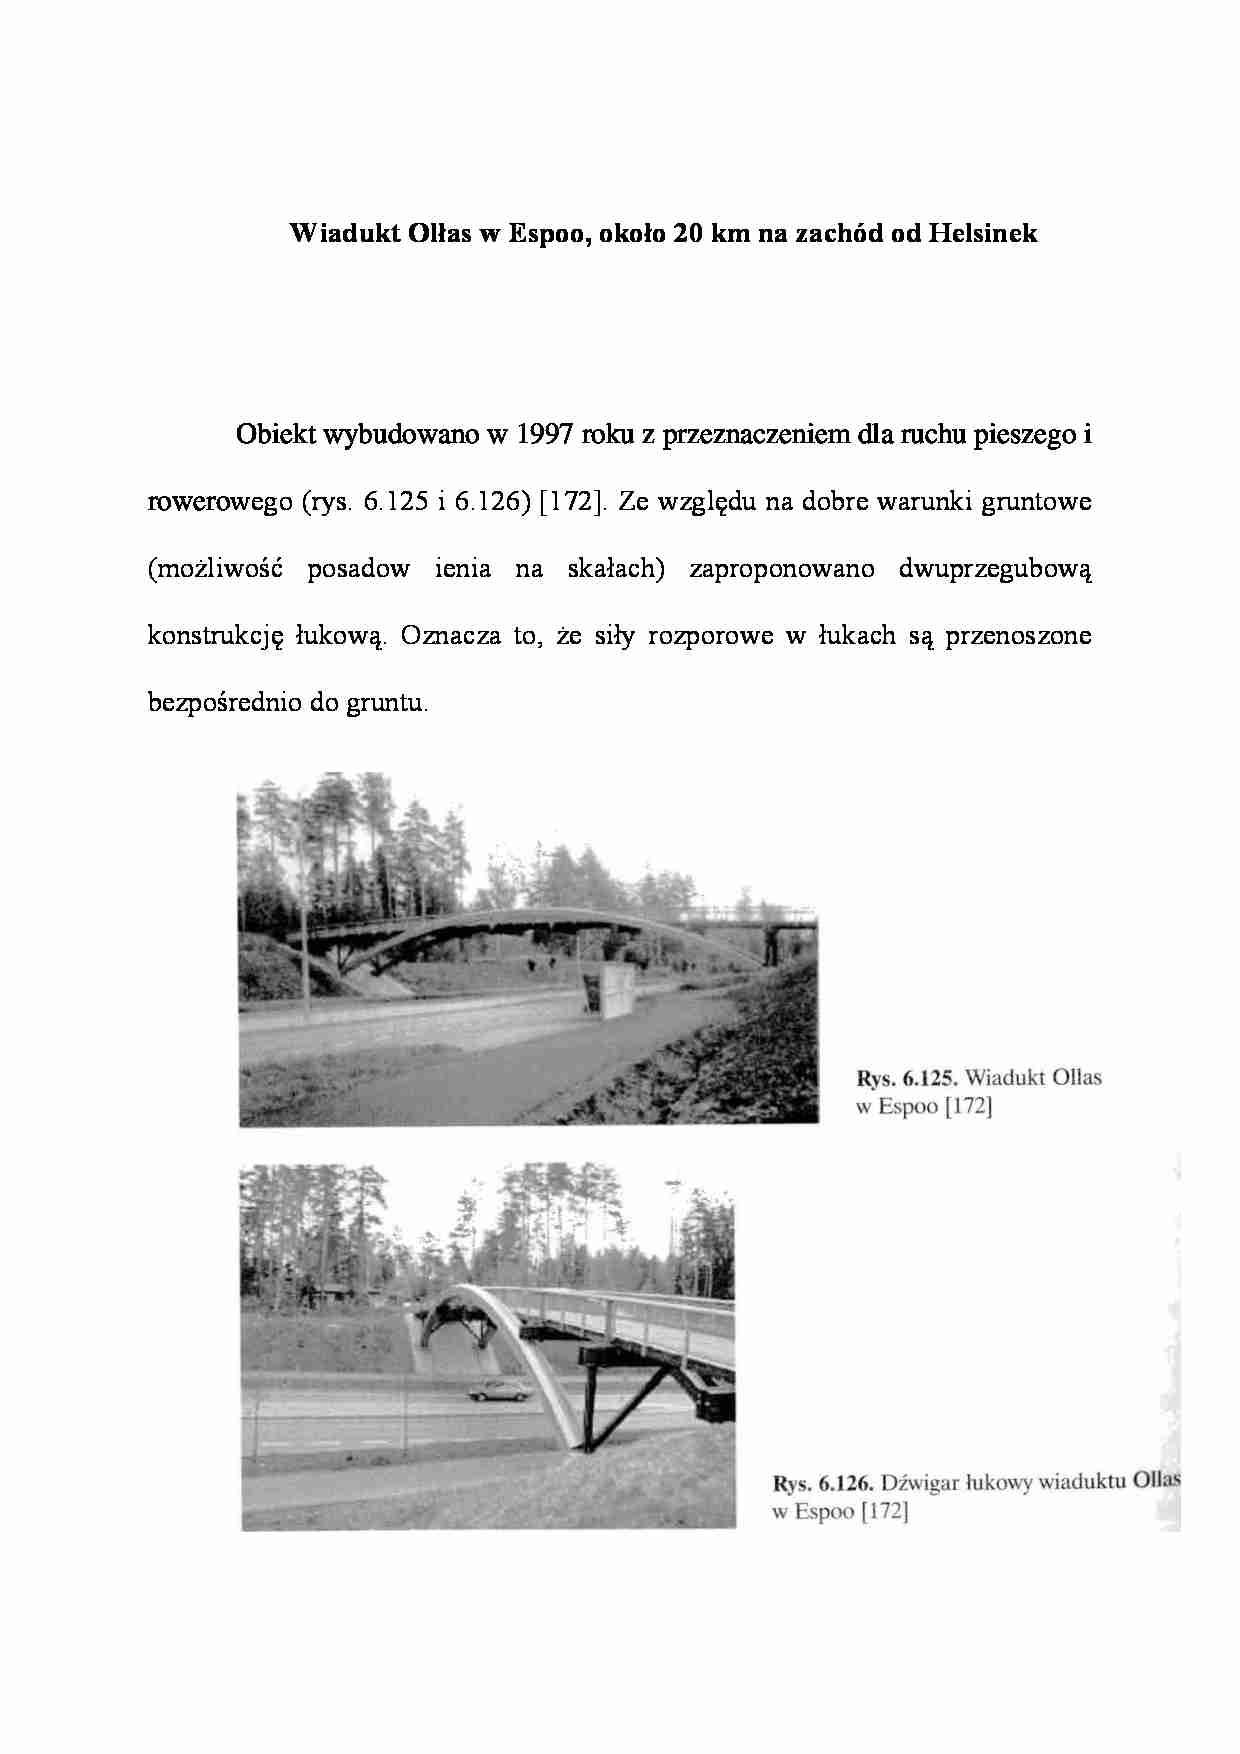 Wiadukt Olłas w Espoo - wykład  - strona 1